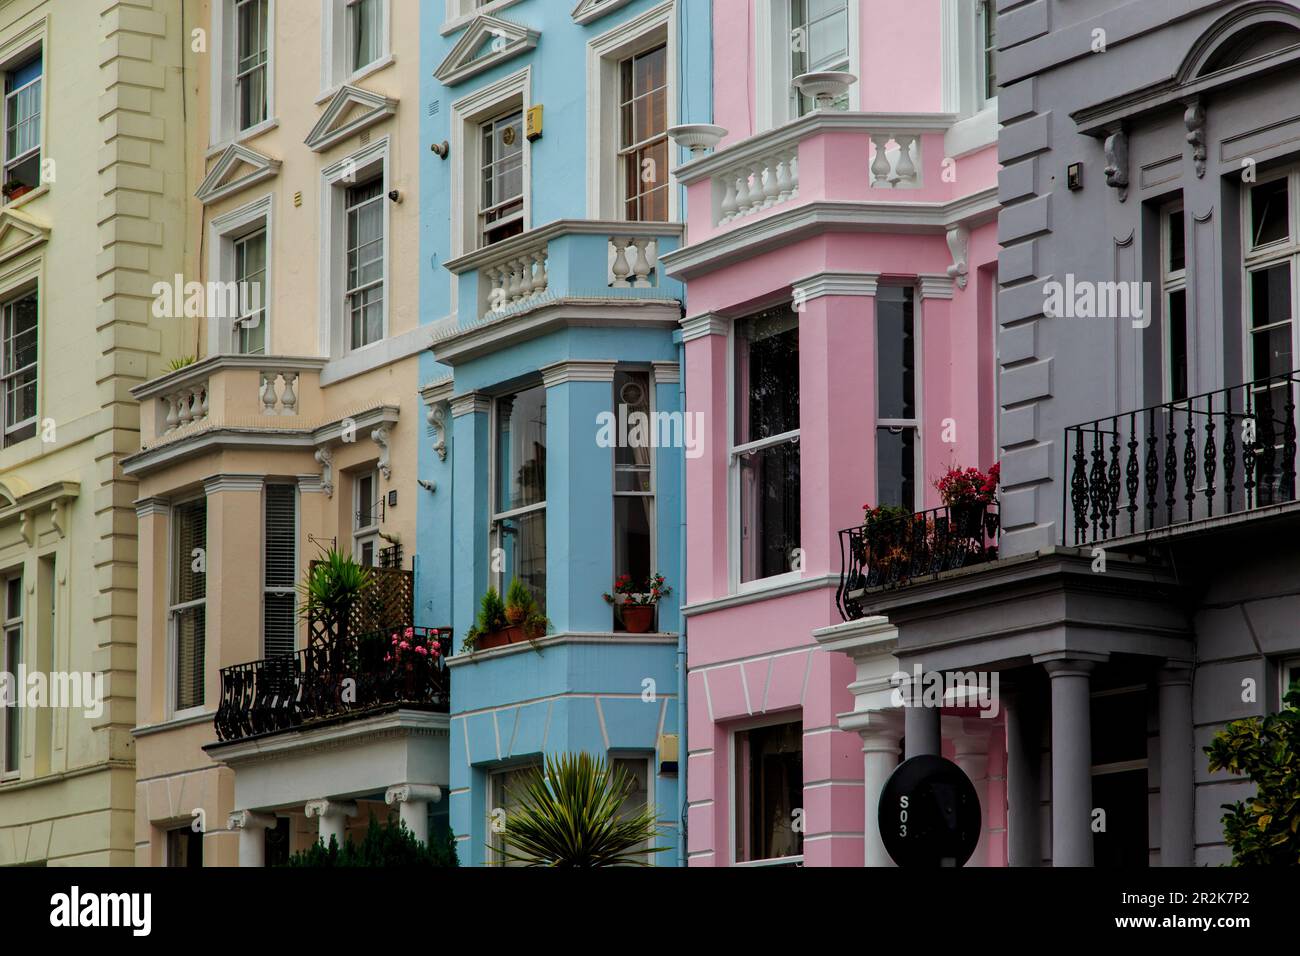 LONDON, GROSSBRITANNIEN - 20. SEPTEMBER 2014: Dies sind Architektur und mehrfarbige Häuser im jetzt prestigeträchtigen Viertel Notting Hill. Stockfoto